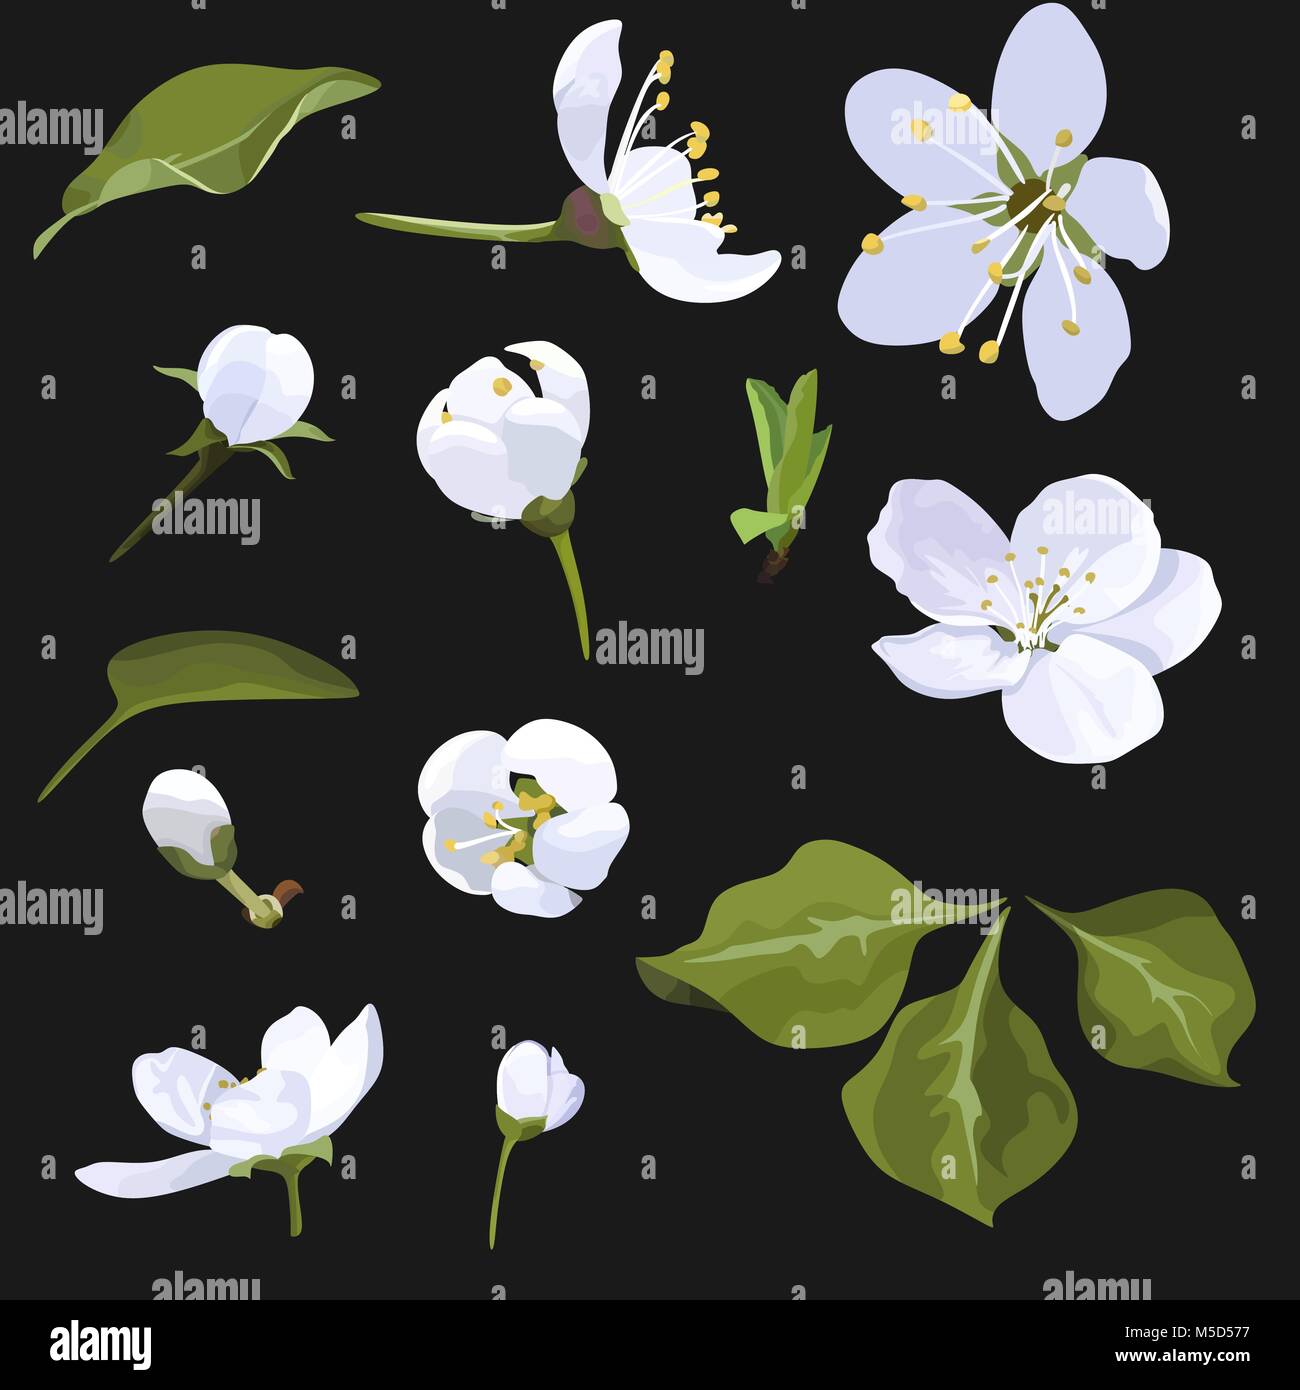 Apple Blossom Vector Clip Art Satz Weisse Blume Bild Auf Schwarzem Hintergrund Cherry Blossom Stock Vektorgrafik Alamy